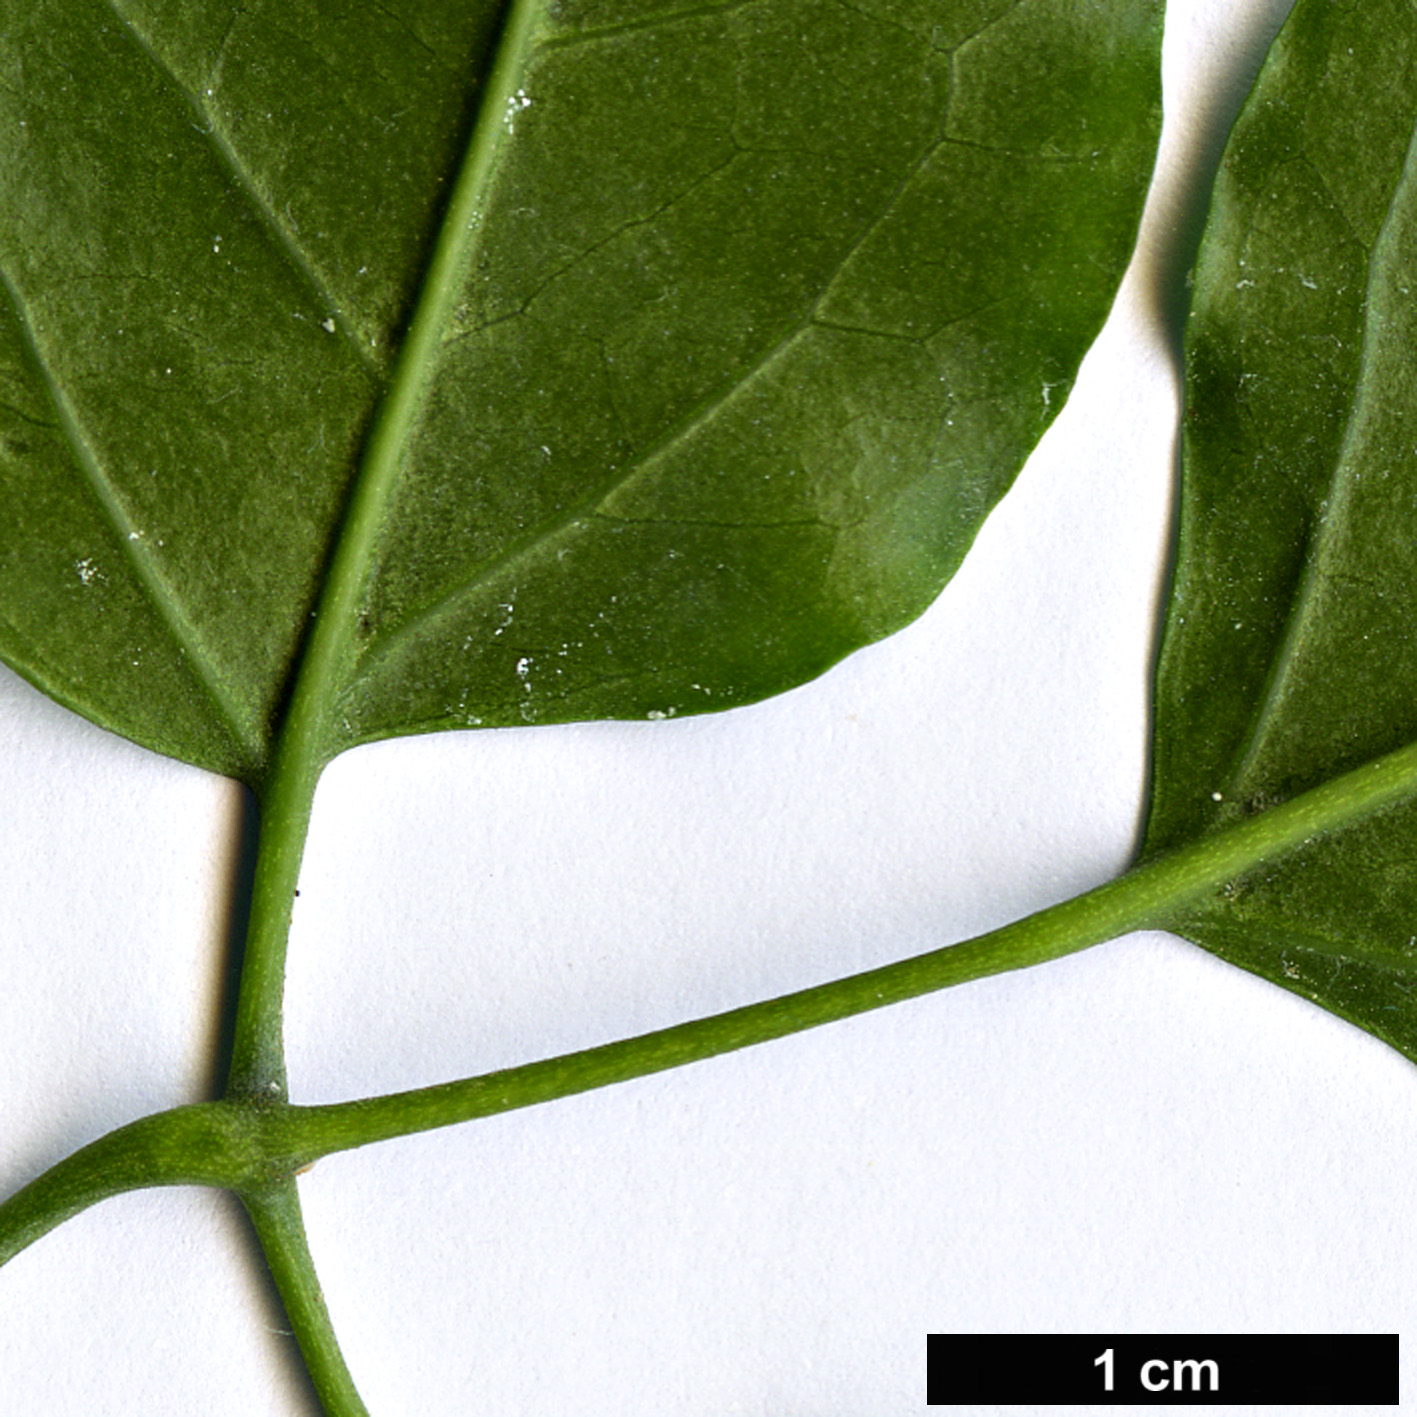 High resolution image: Family: Oleaceae - Genus: Jasminum - Taxon: azoricum